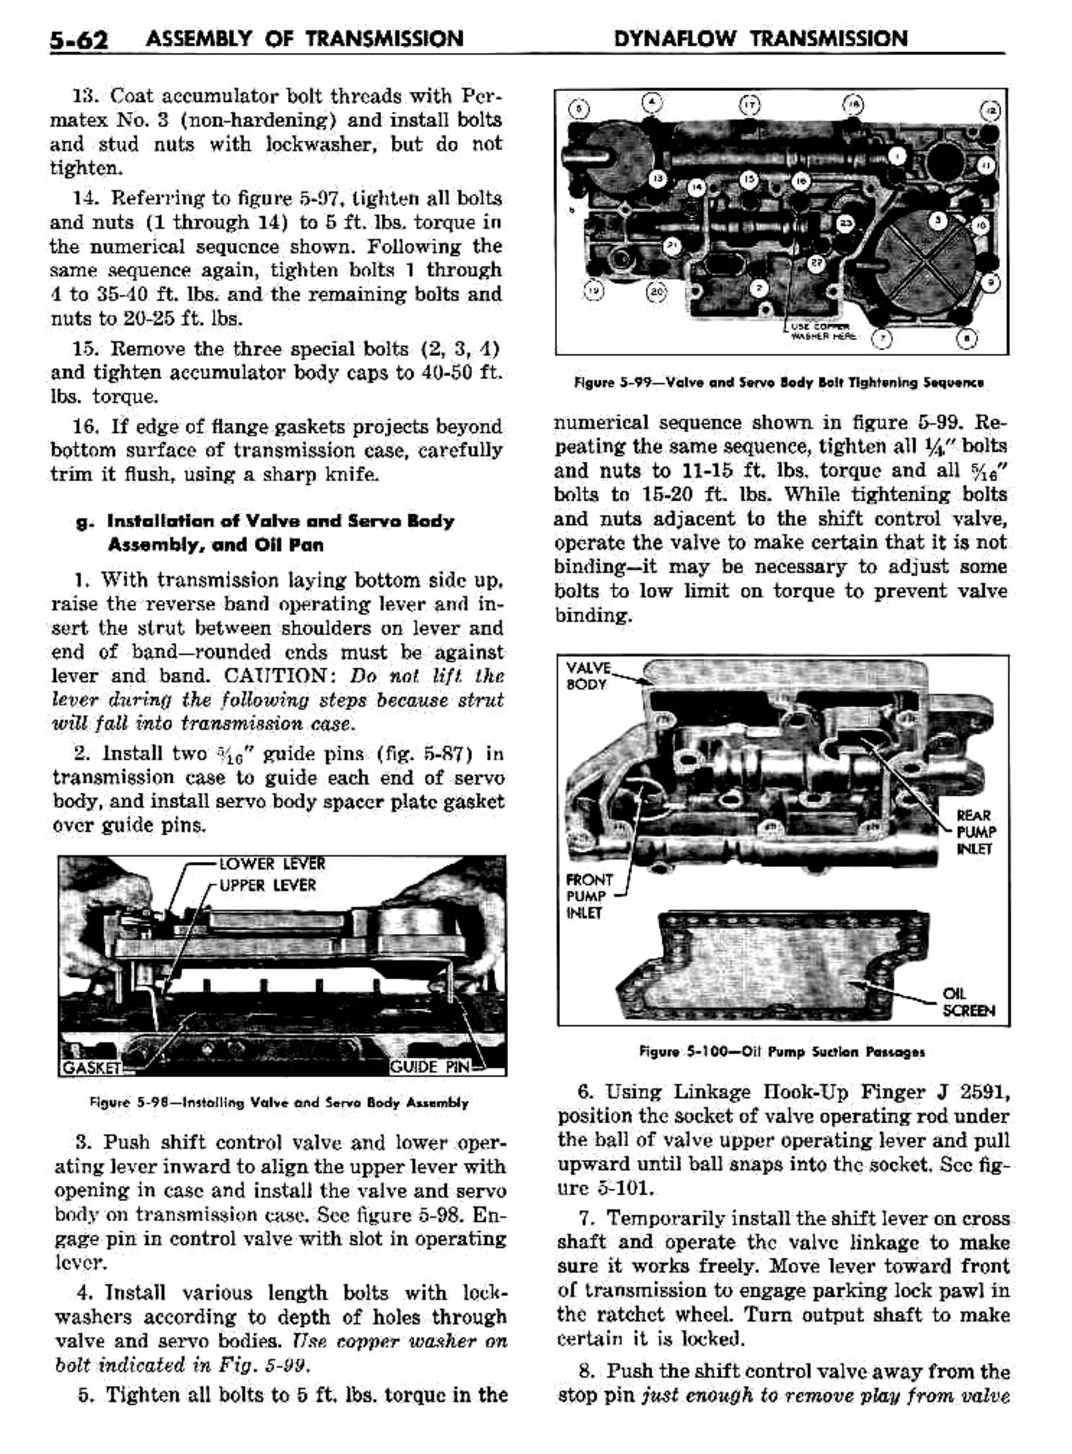 n_06 1957 Buick Shop Manual - Dynaflow-062-062.jpg